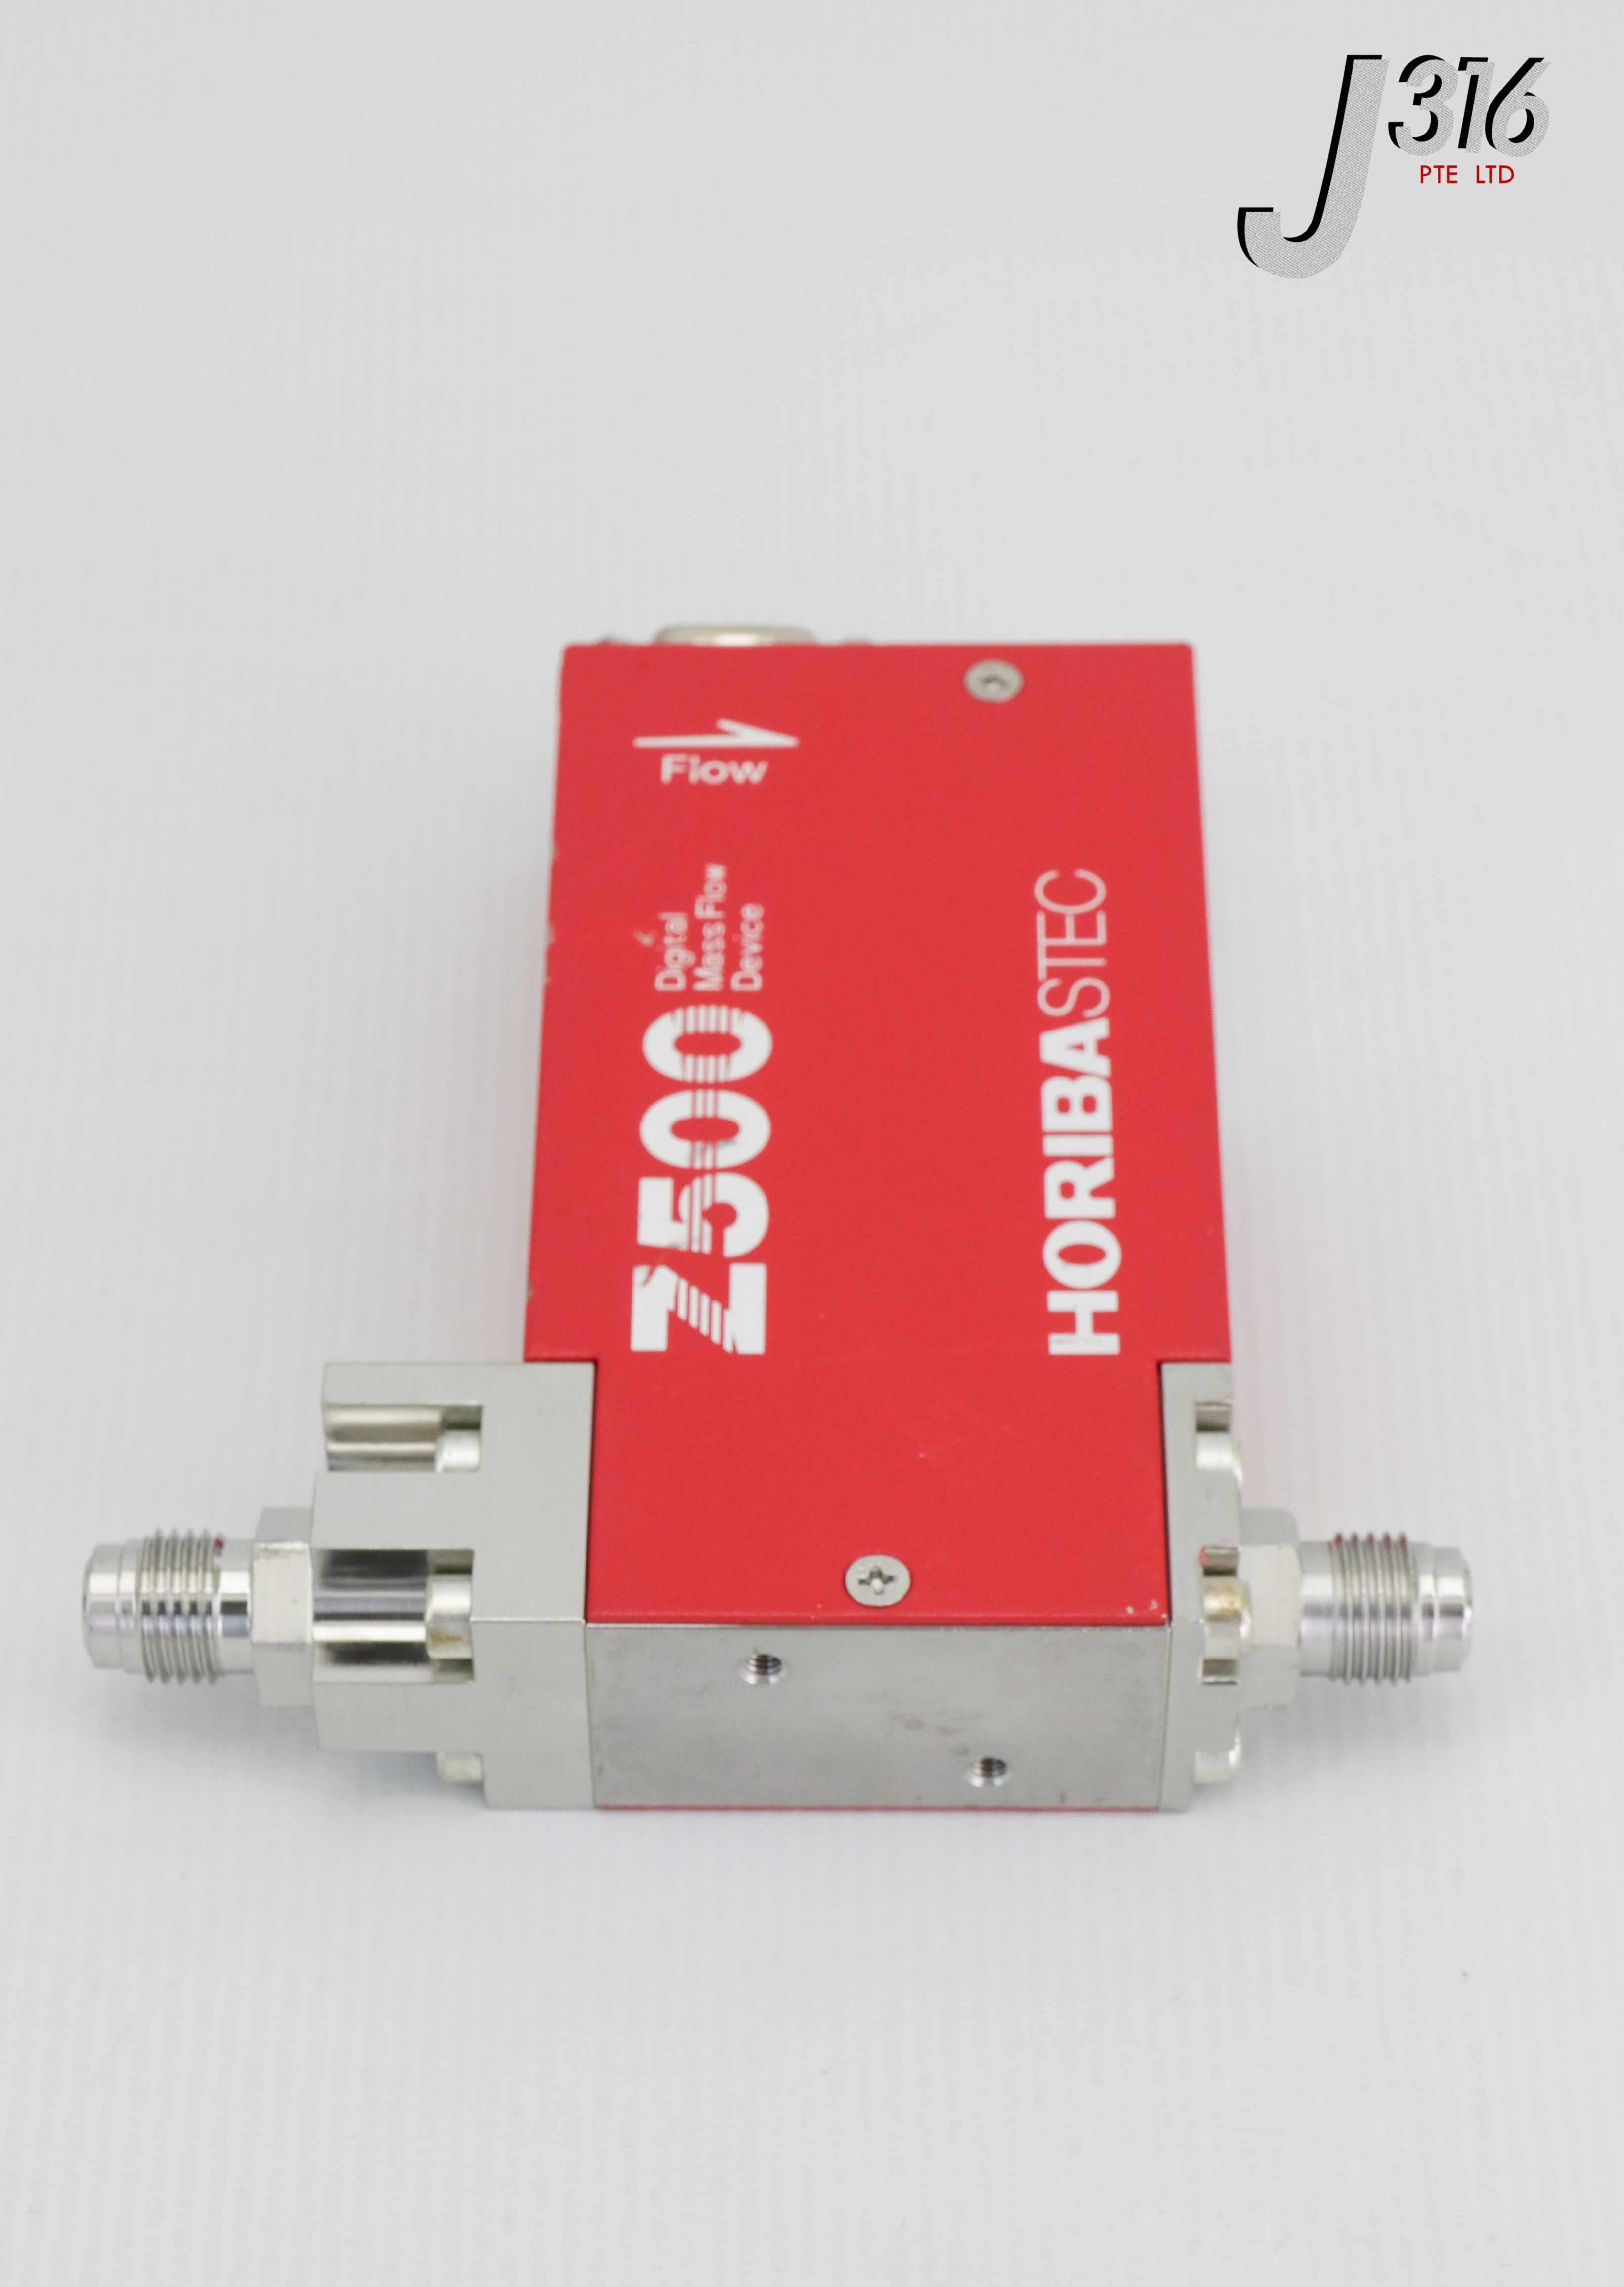 6606 HORIBA-STEC Z500 MFC, MASS FLOW CONTROLLER SEC-Z512MGX -...